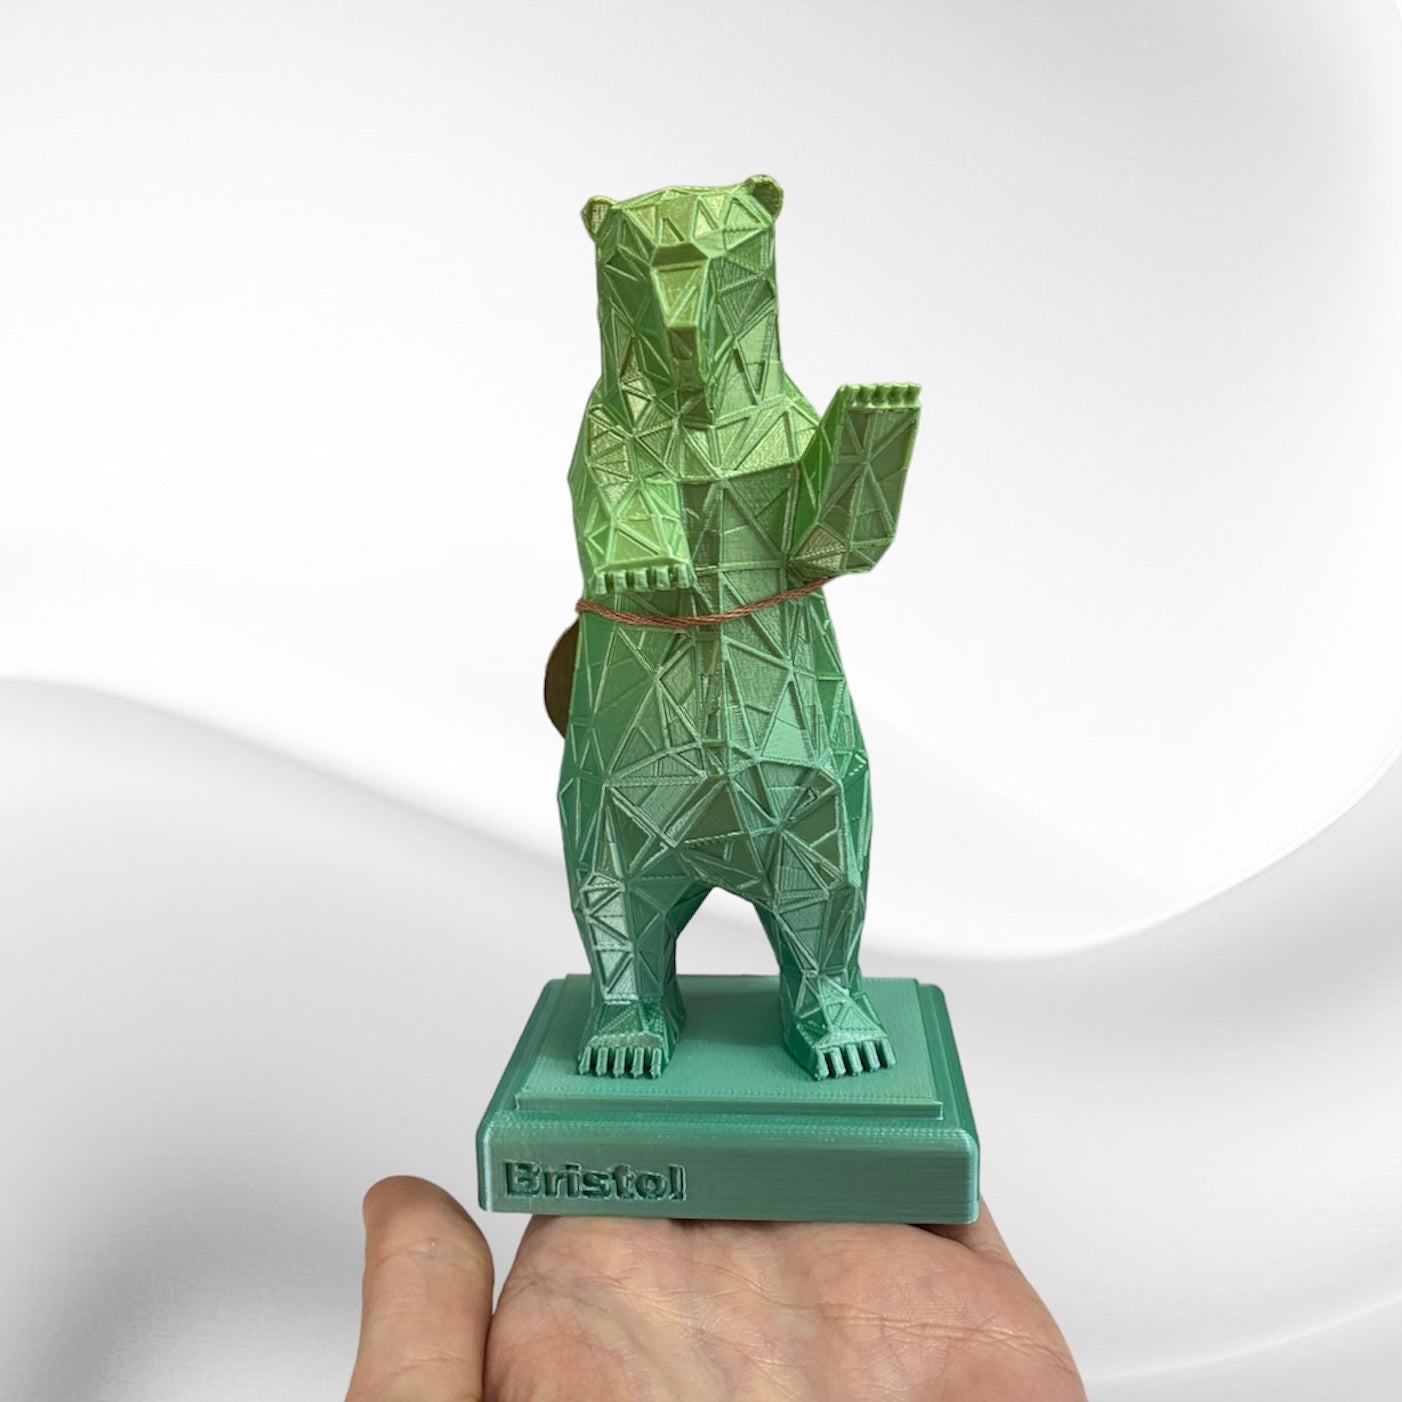 3D Printed Bear 15cm